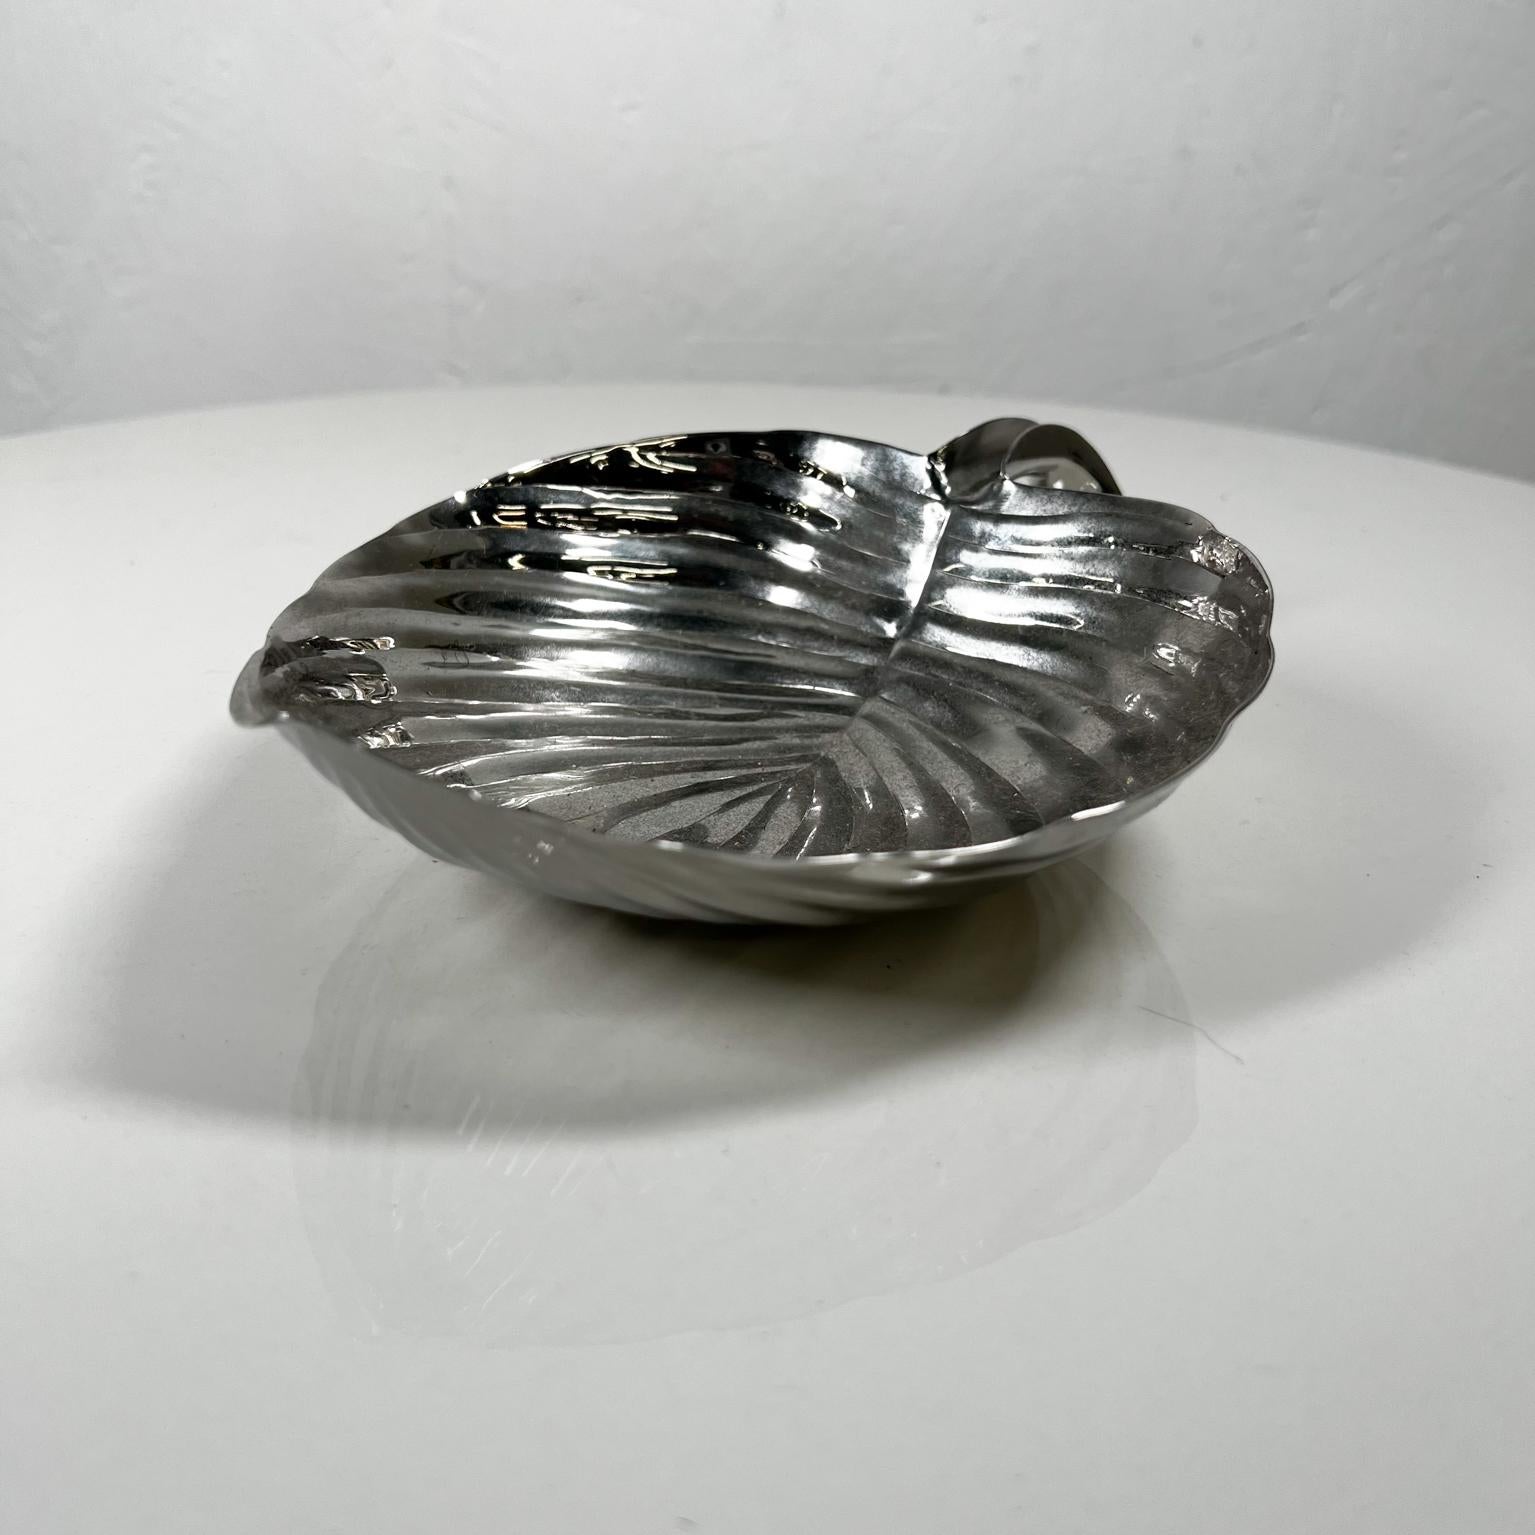 American Michael Aram Polished Silver Leaf Decorative Candy Dish